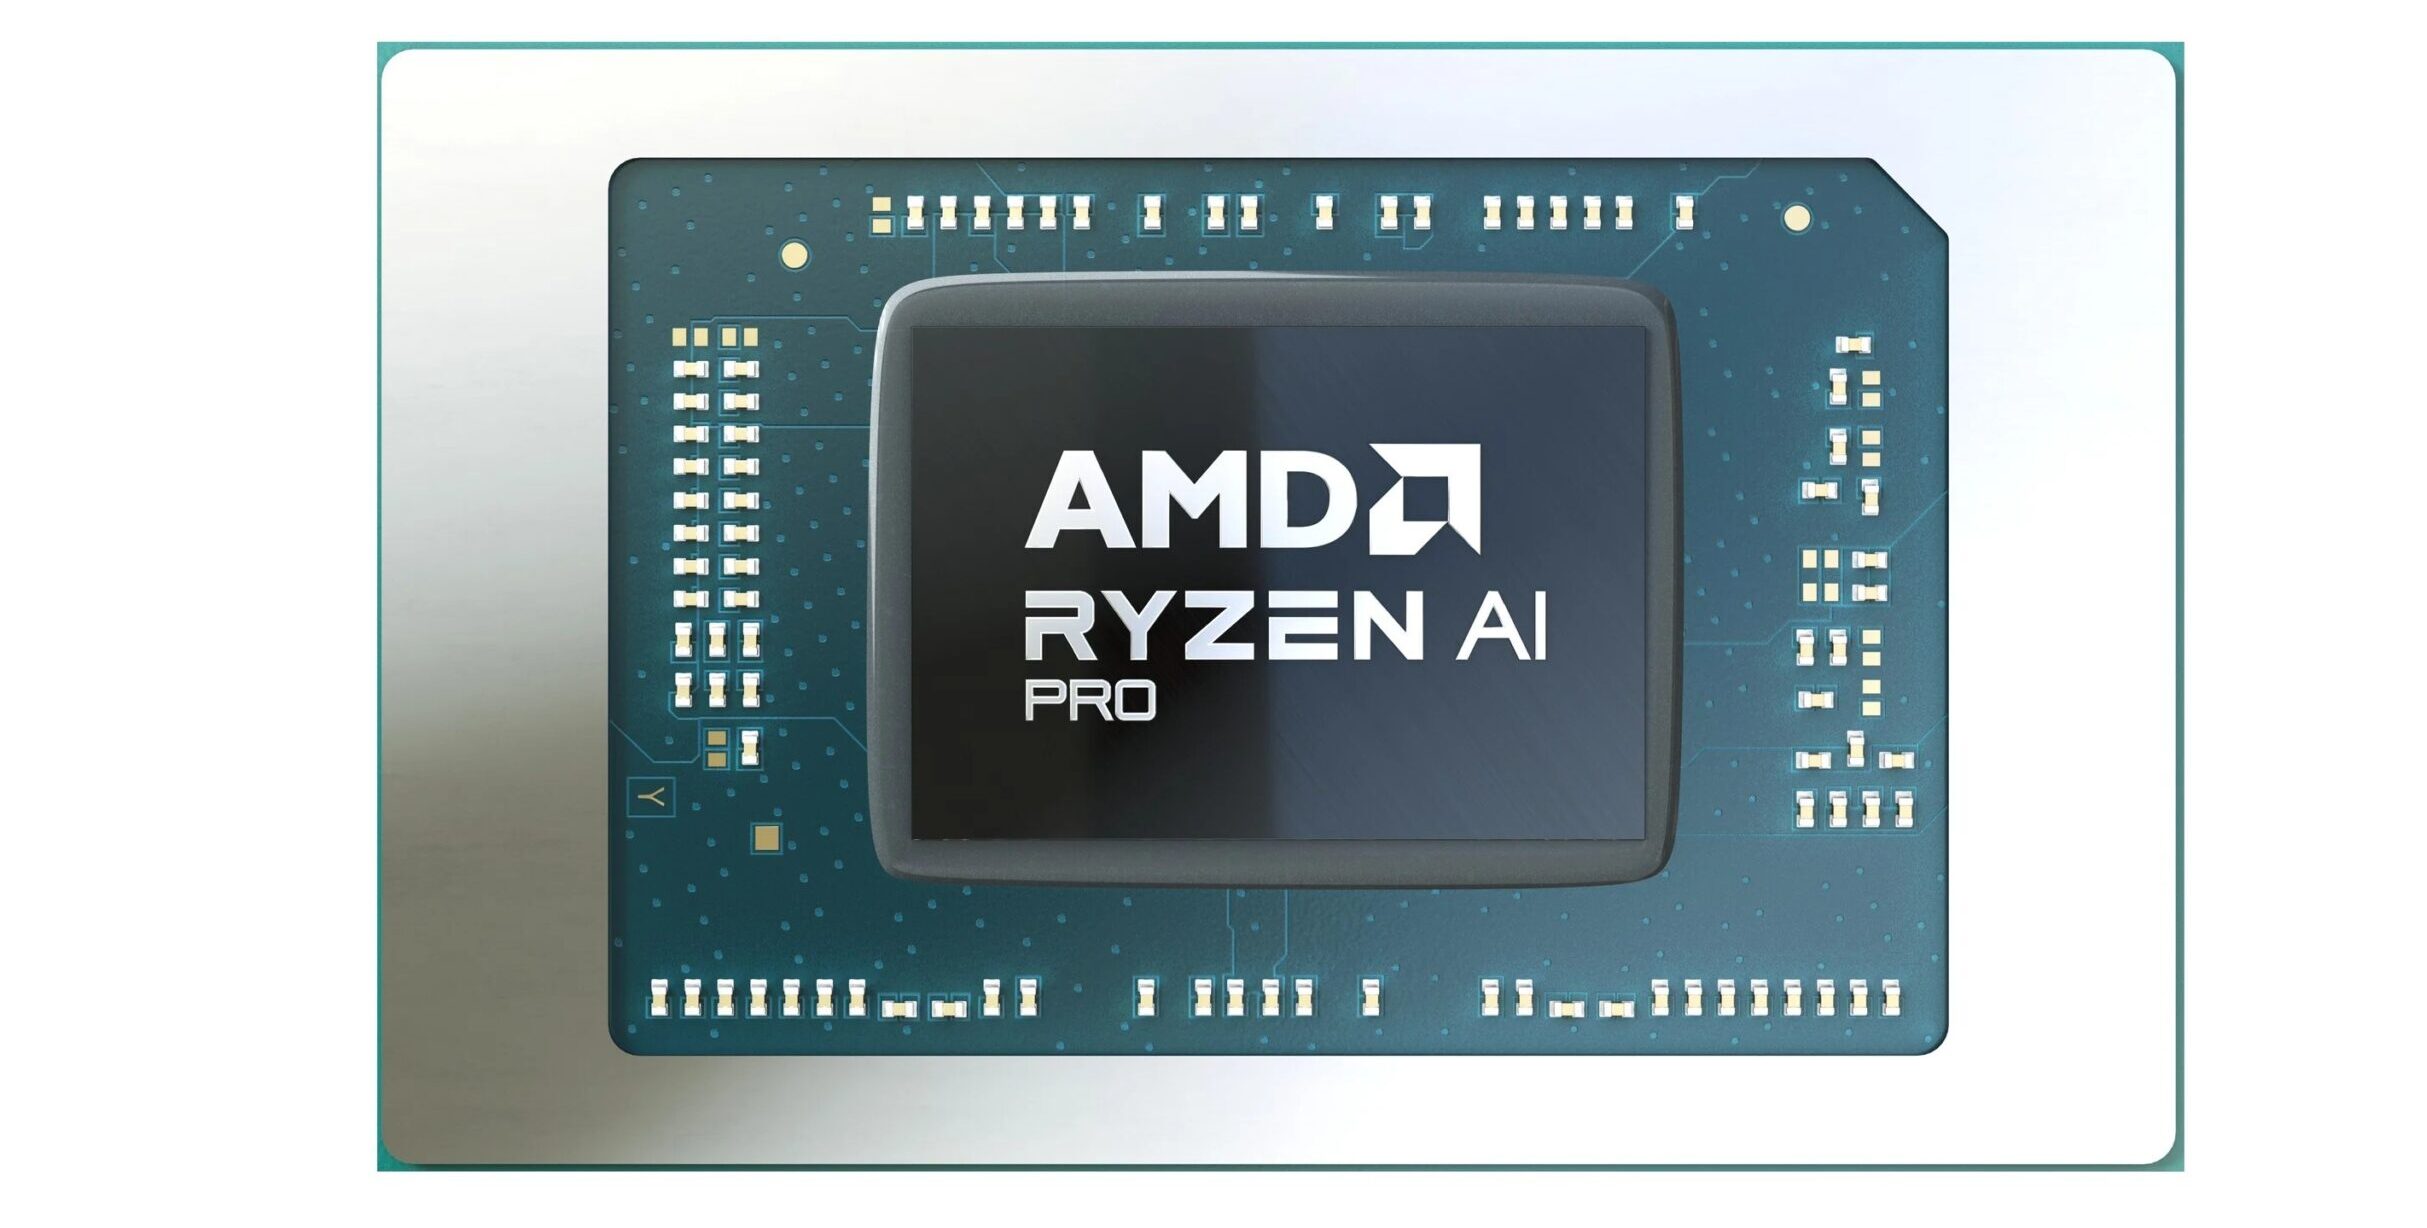 AMD Ryzen Pro laptop